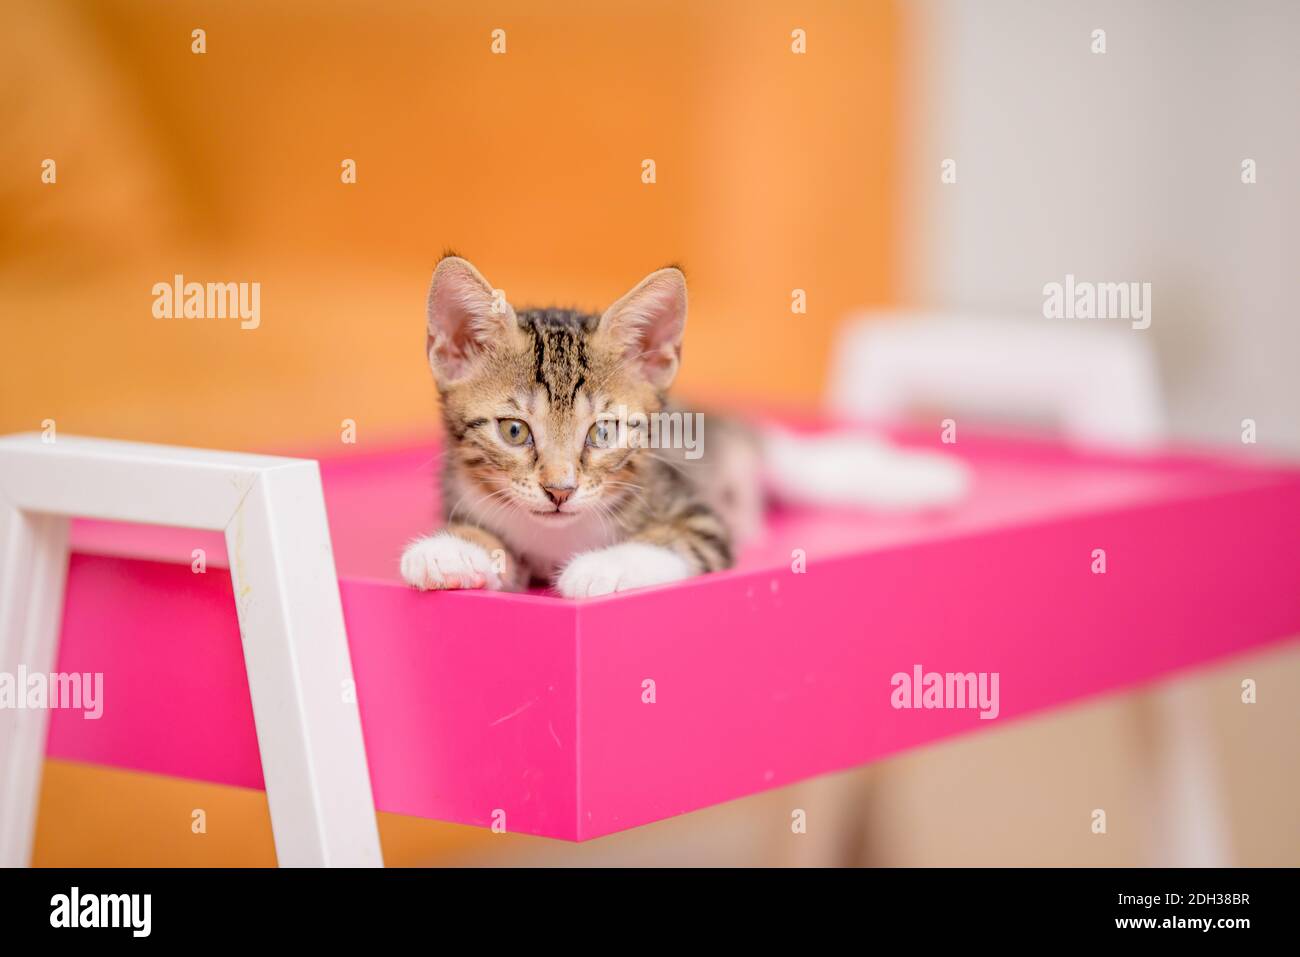 Gattino tabby che guarda lo sfondo sfocato della fotocamera Foto Stock